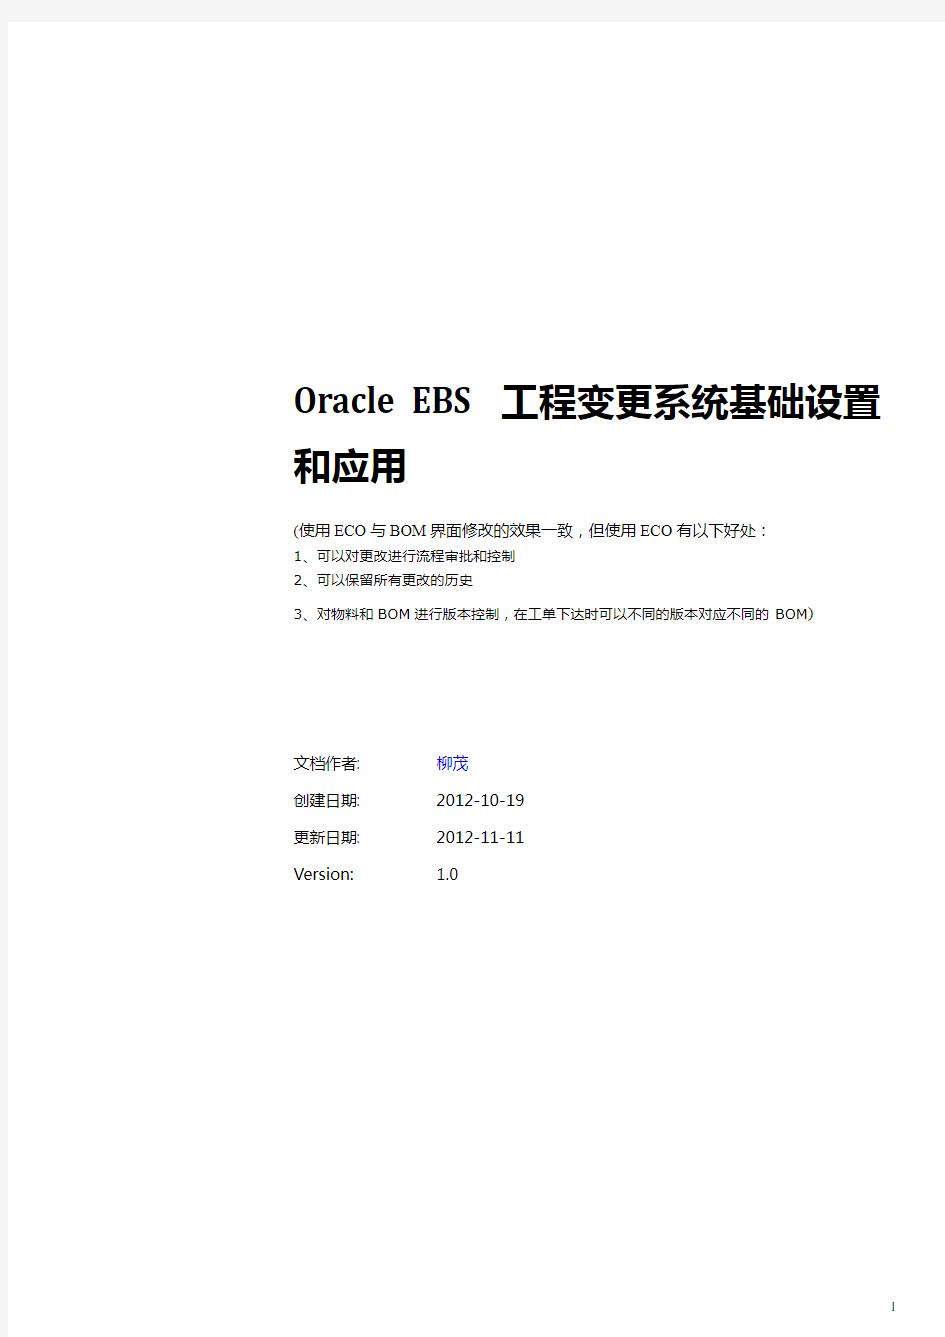 ECO基础设置和应用操作手册_20121009